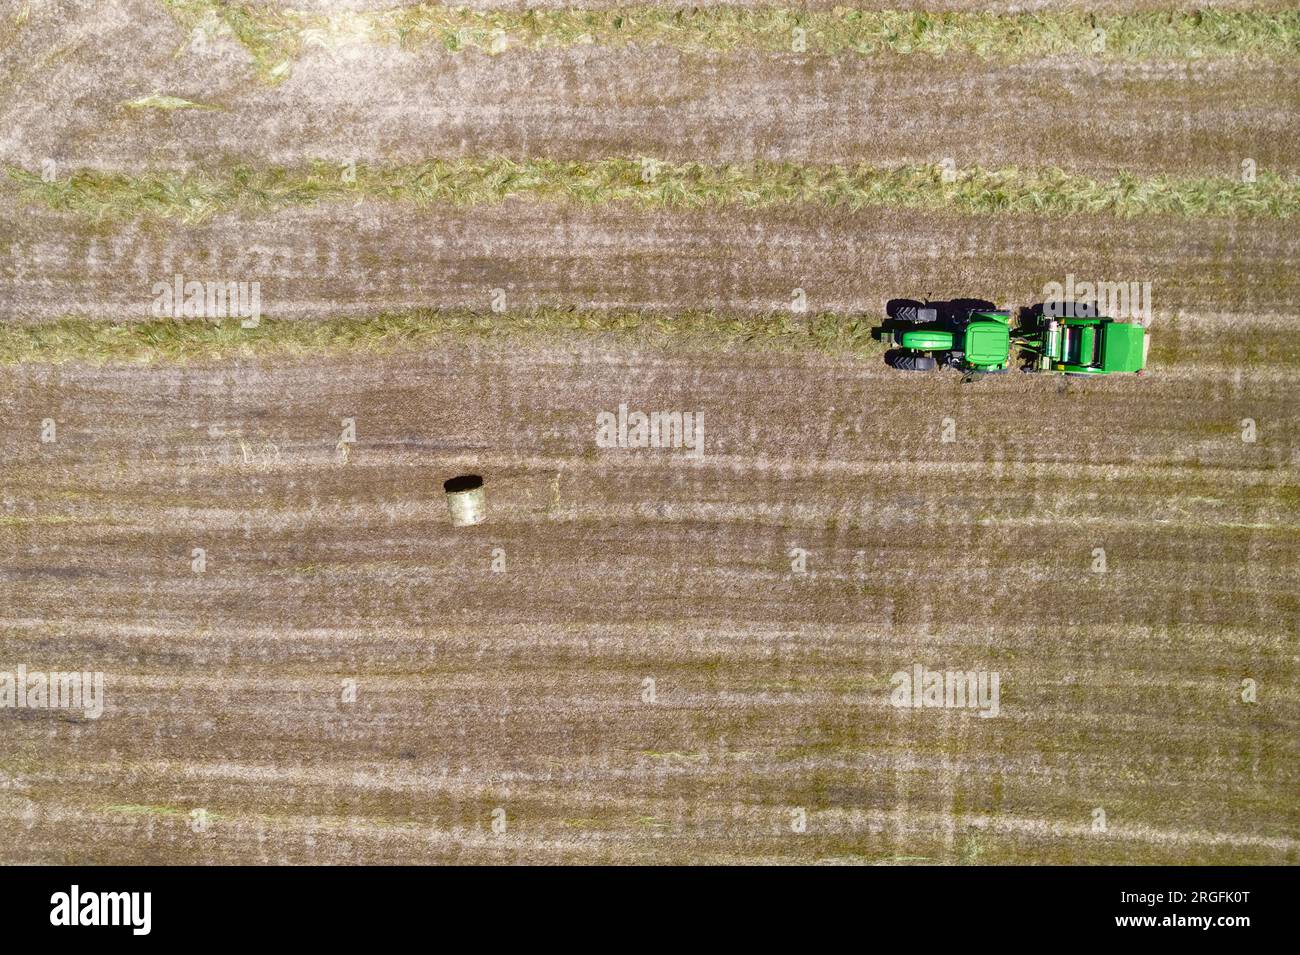 Draufsicht des Traktors mit Heuballen. Landmaschinen. Abgeschrägtes Feld und Heuhaufen nach der Ernte von Getreide. Draufsicht. Erntekonzept. Stockfoto